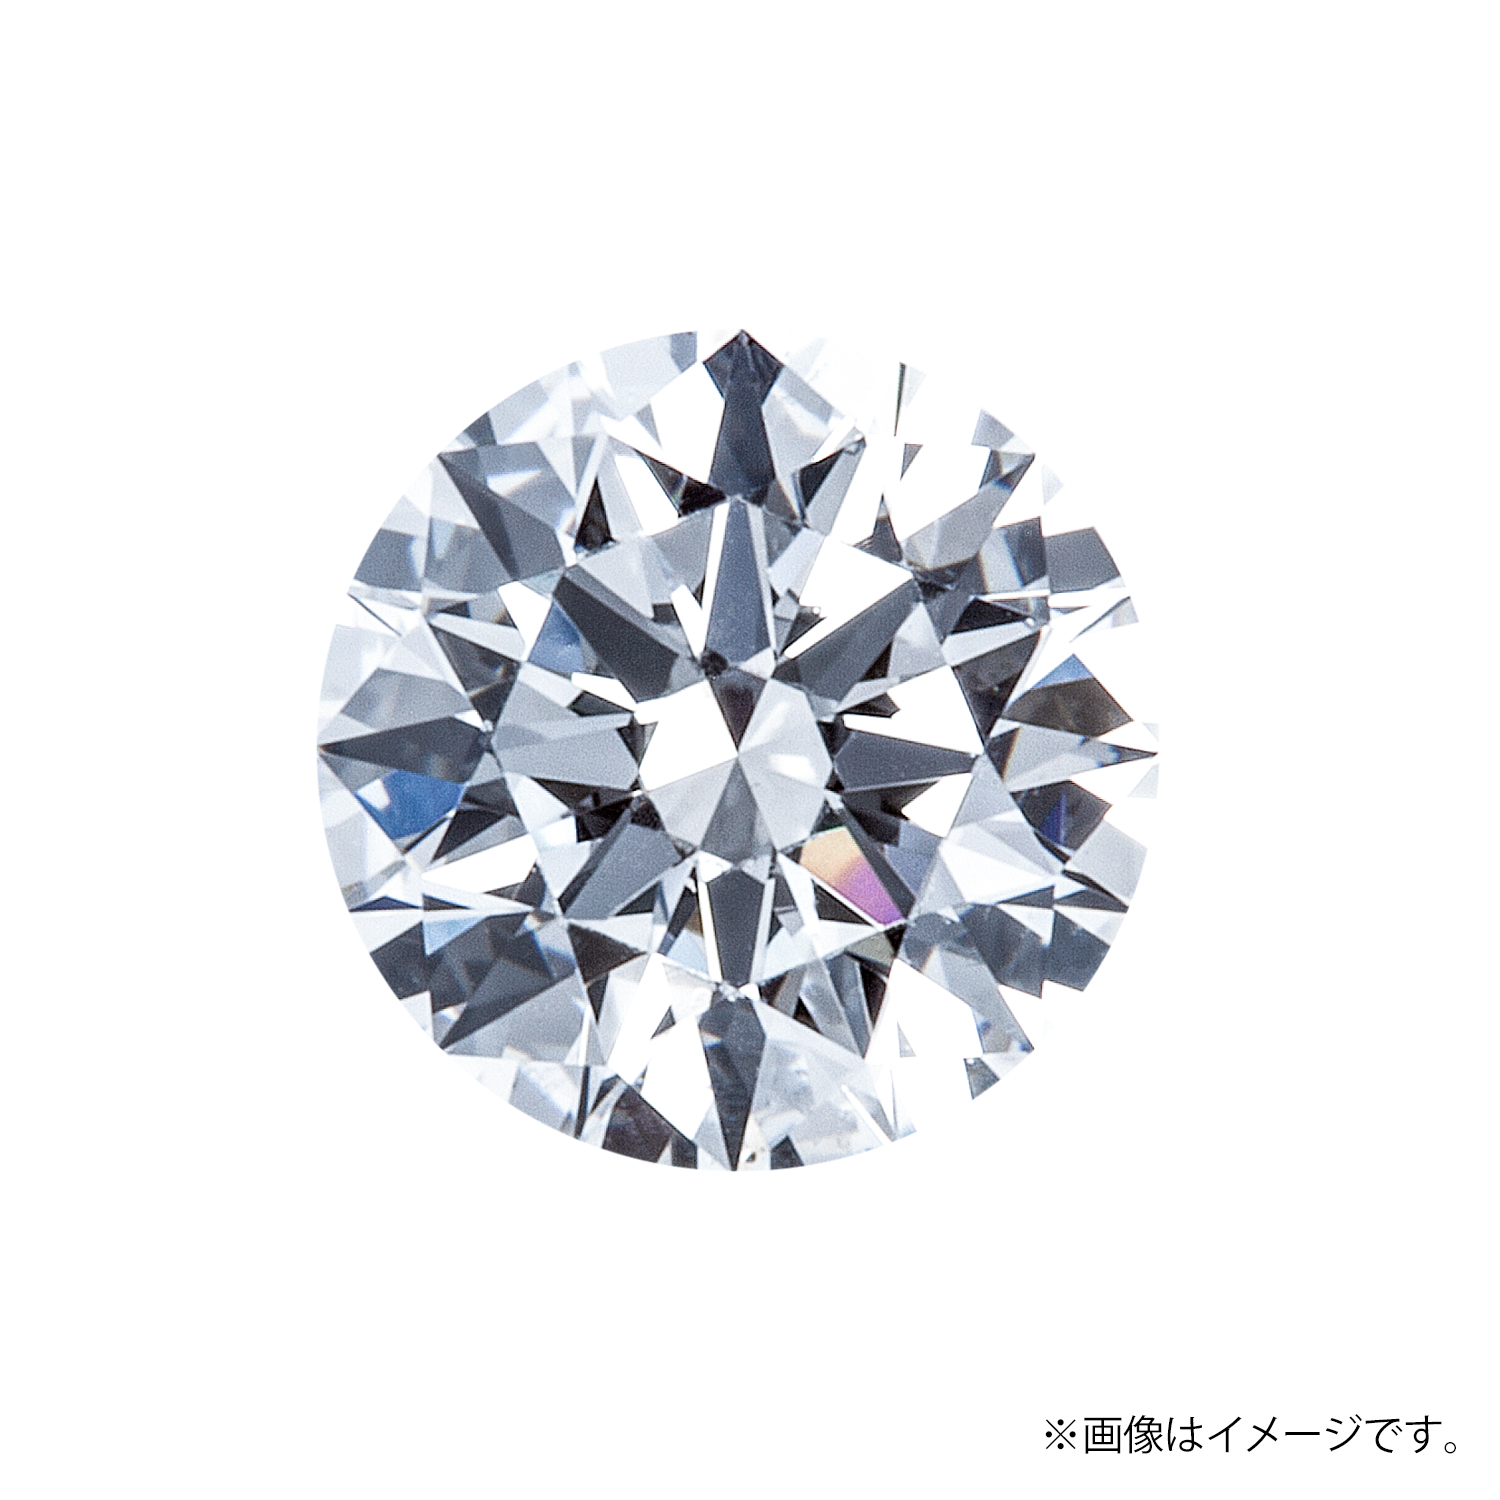 0.281ct Round ダイヤモンド / F / VS2 / 3EX H&C